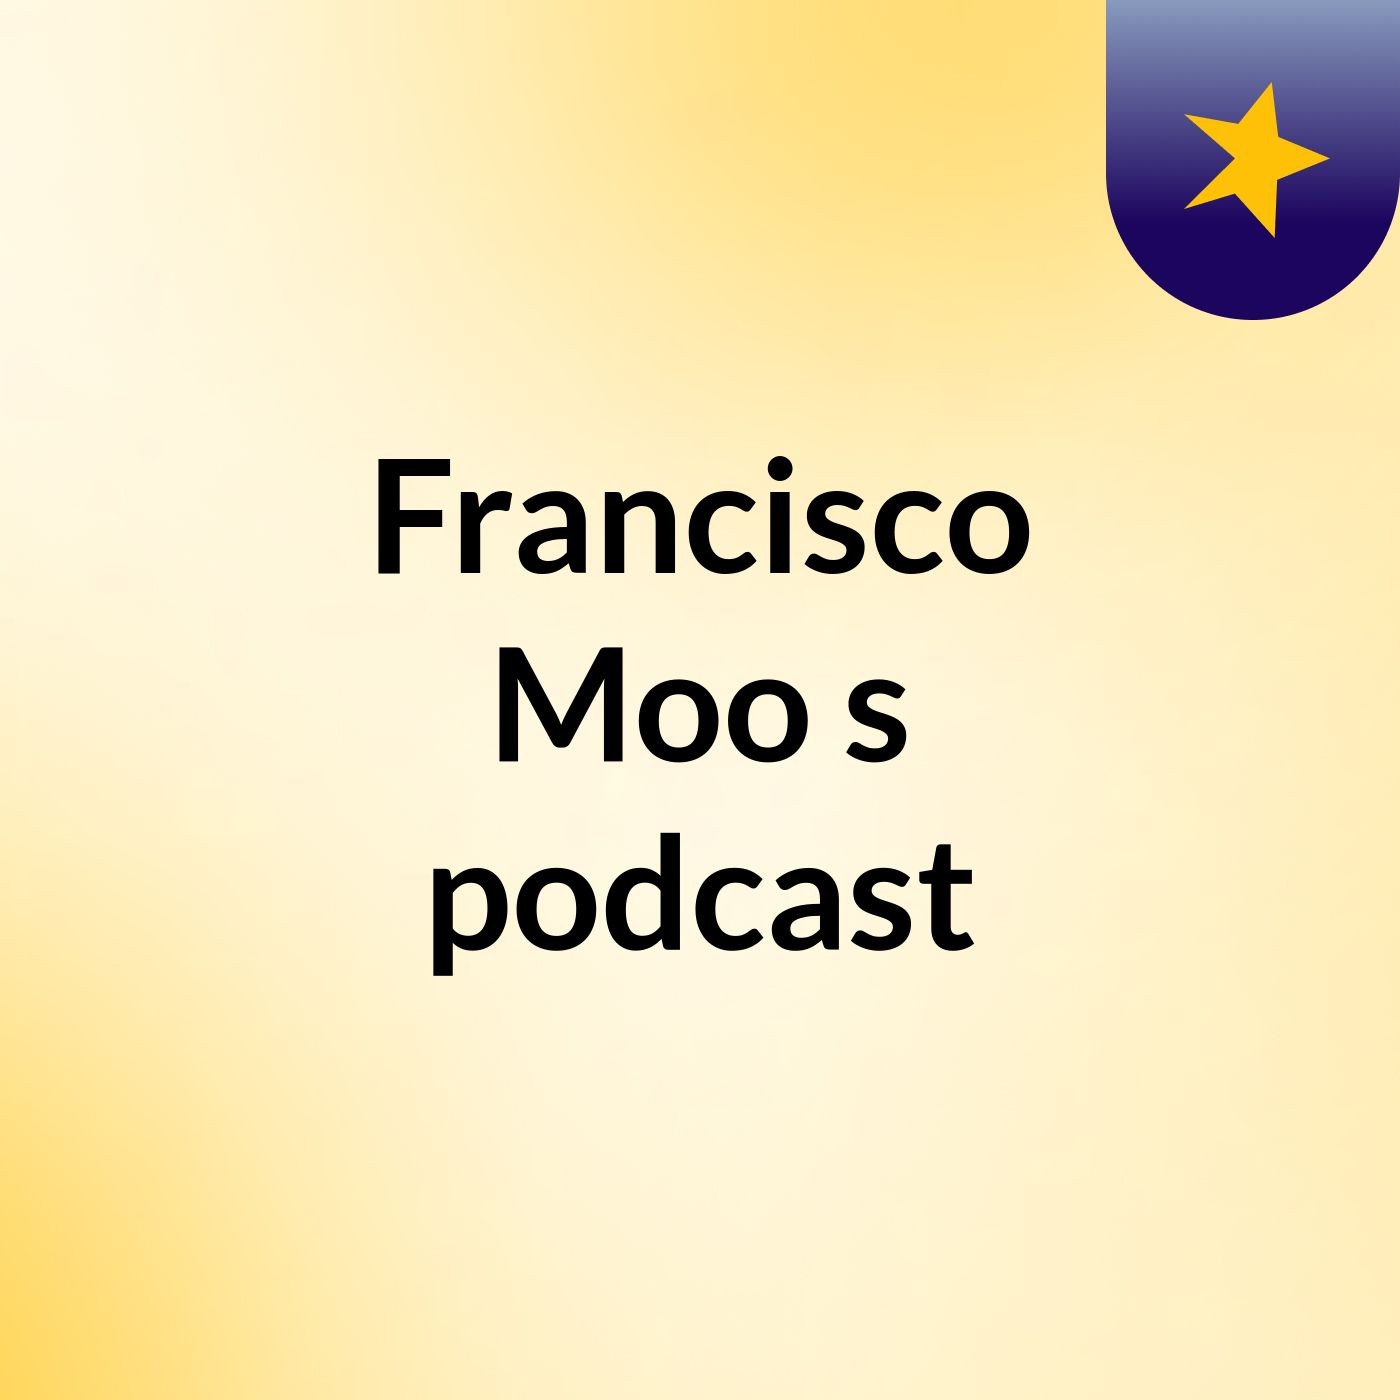 Francisco Moo's podcast